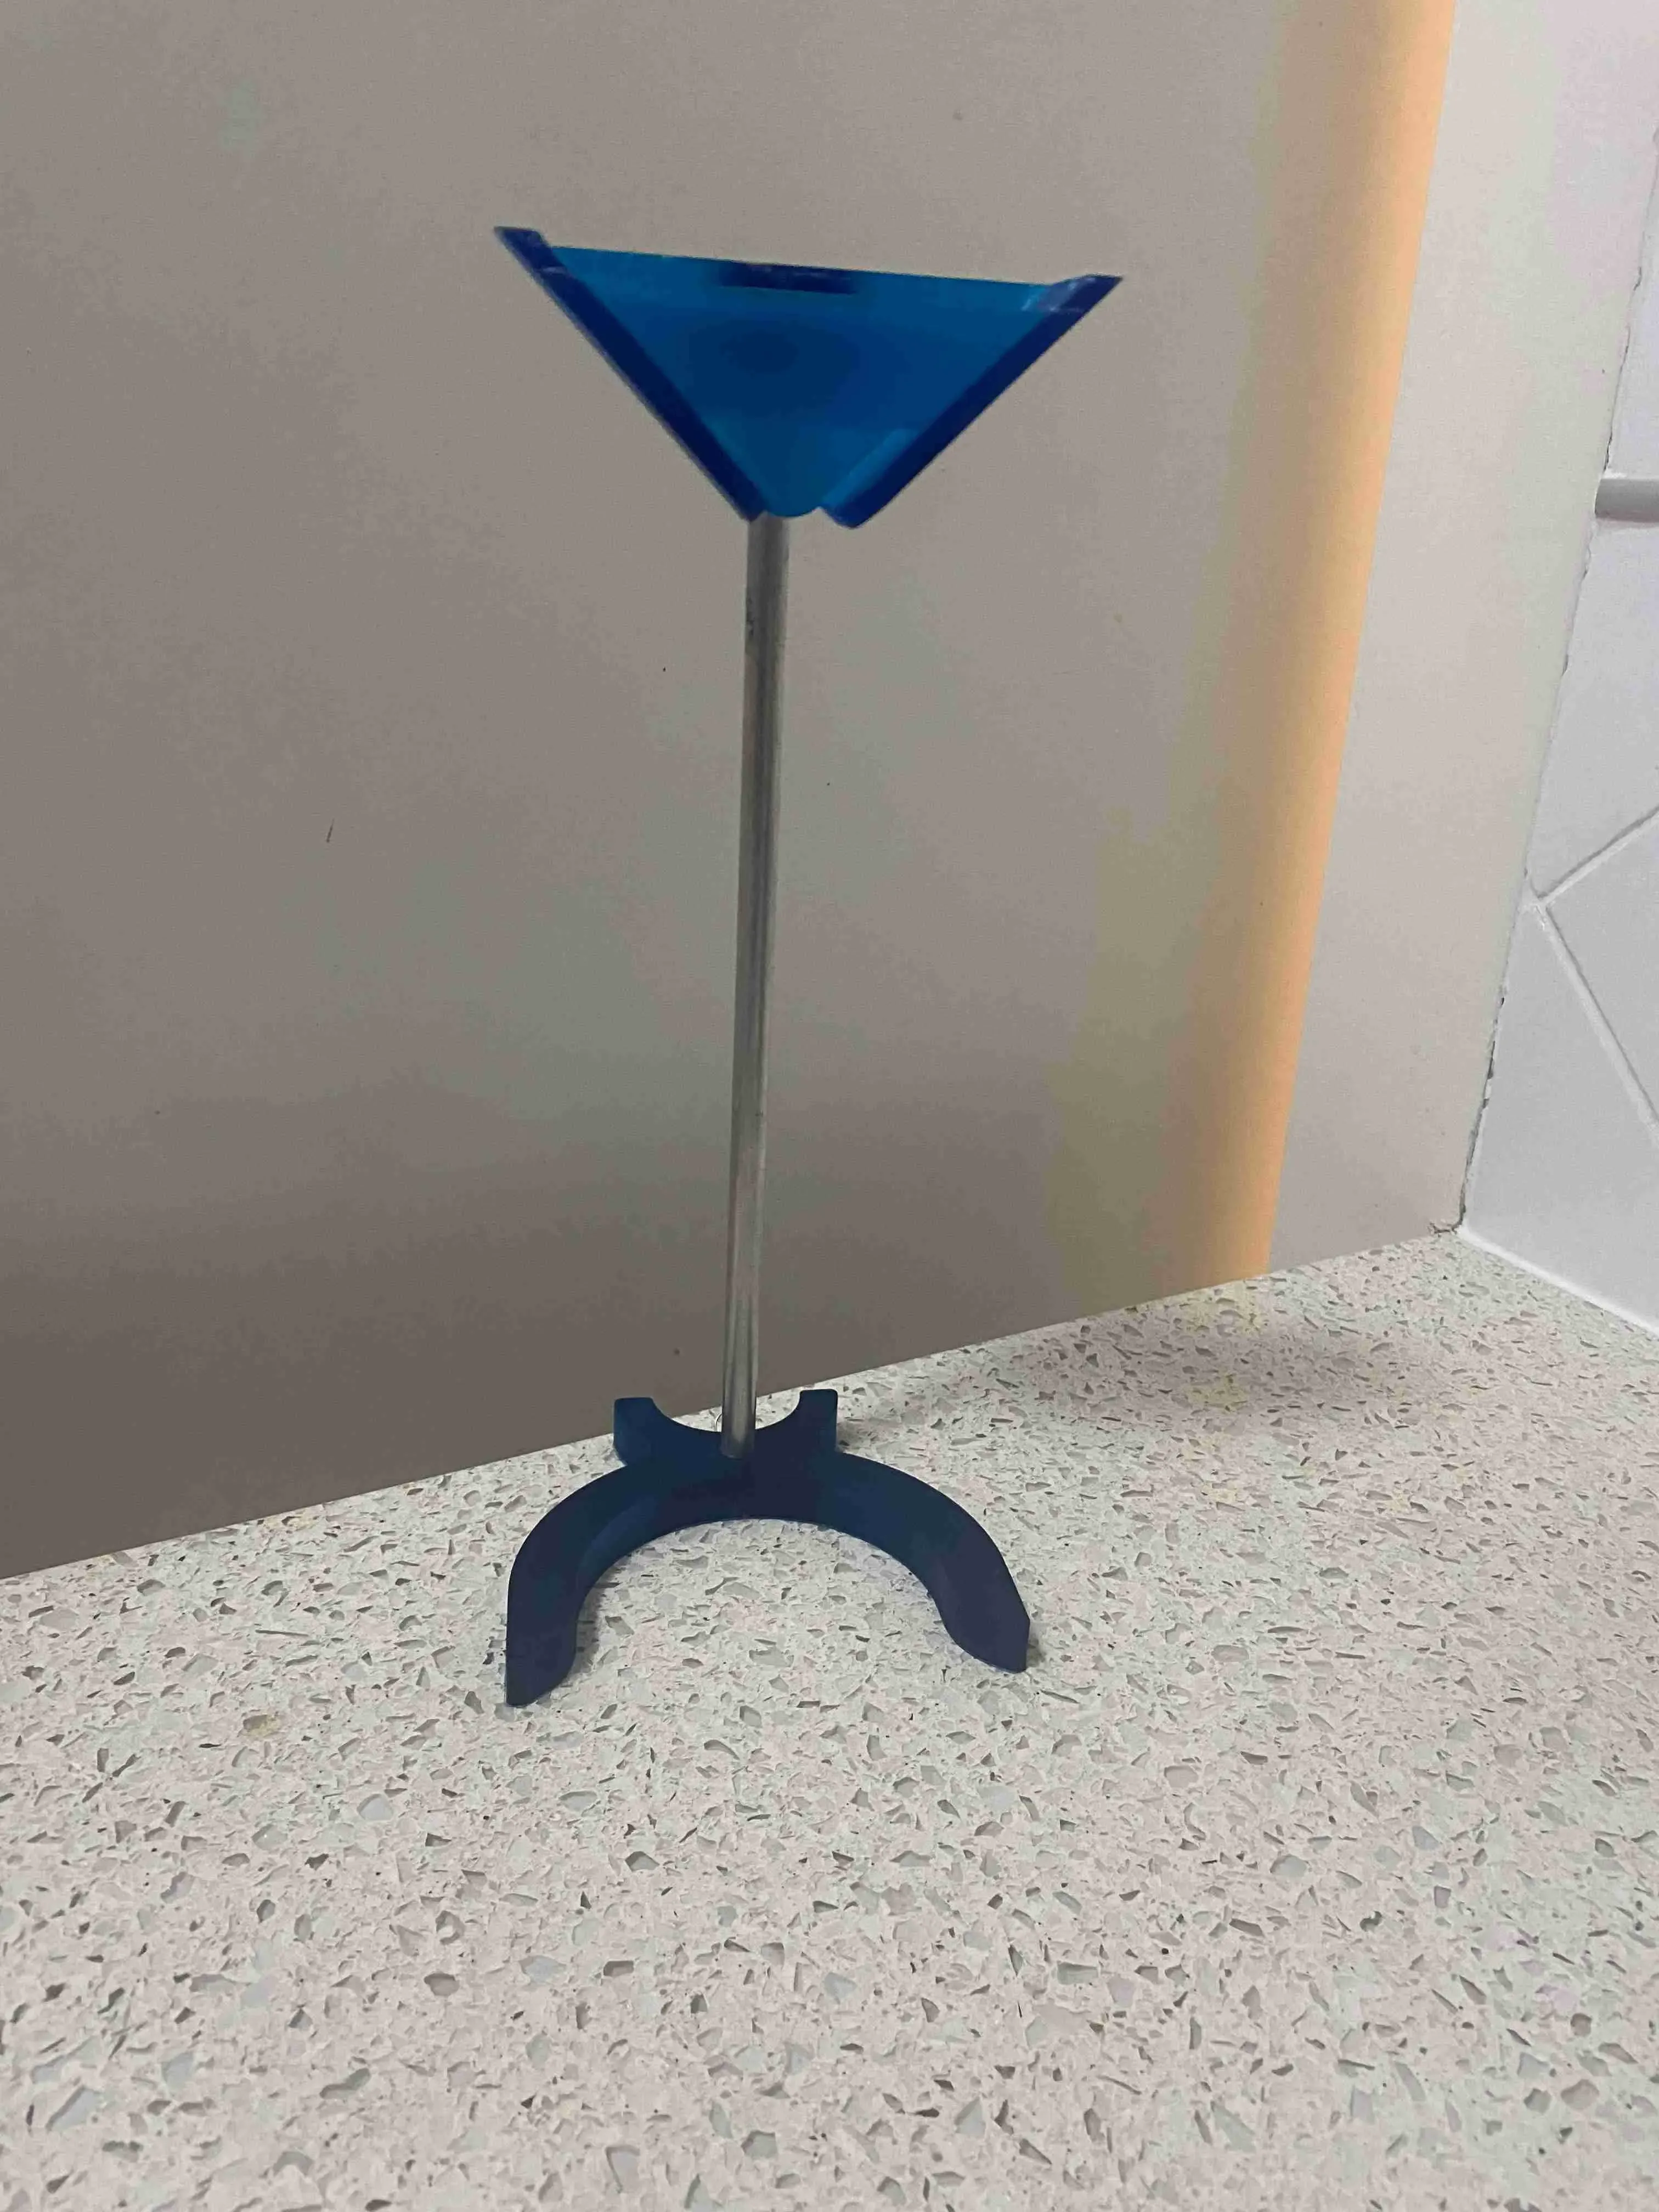 A simple Resin Vat holder for draining